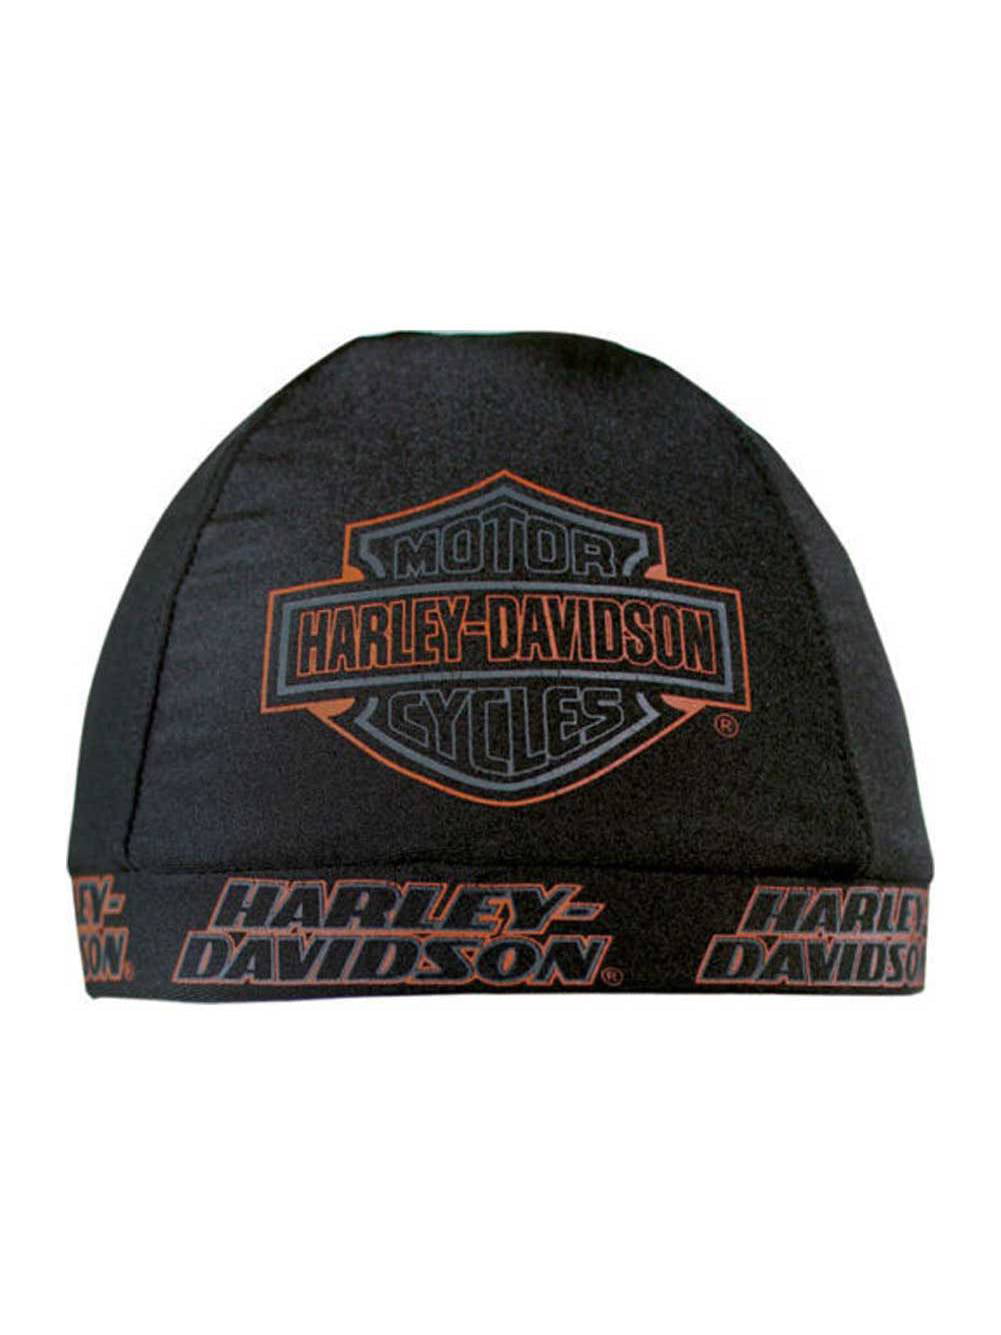 Harley-Davidson Men's Long Bar & Shield Skull Cap Black Orange & White SK31230 